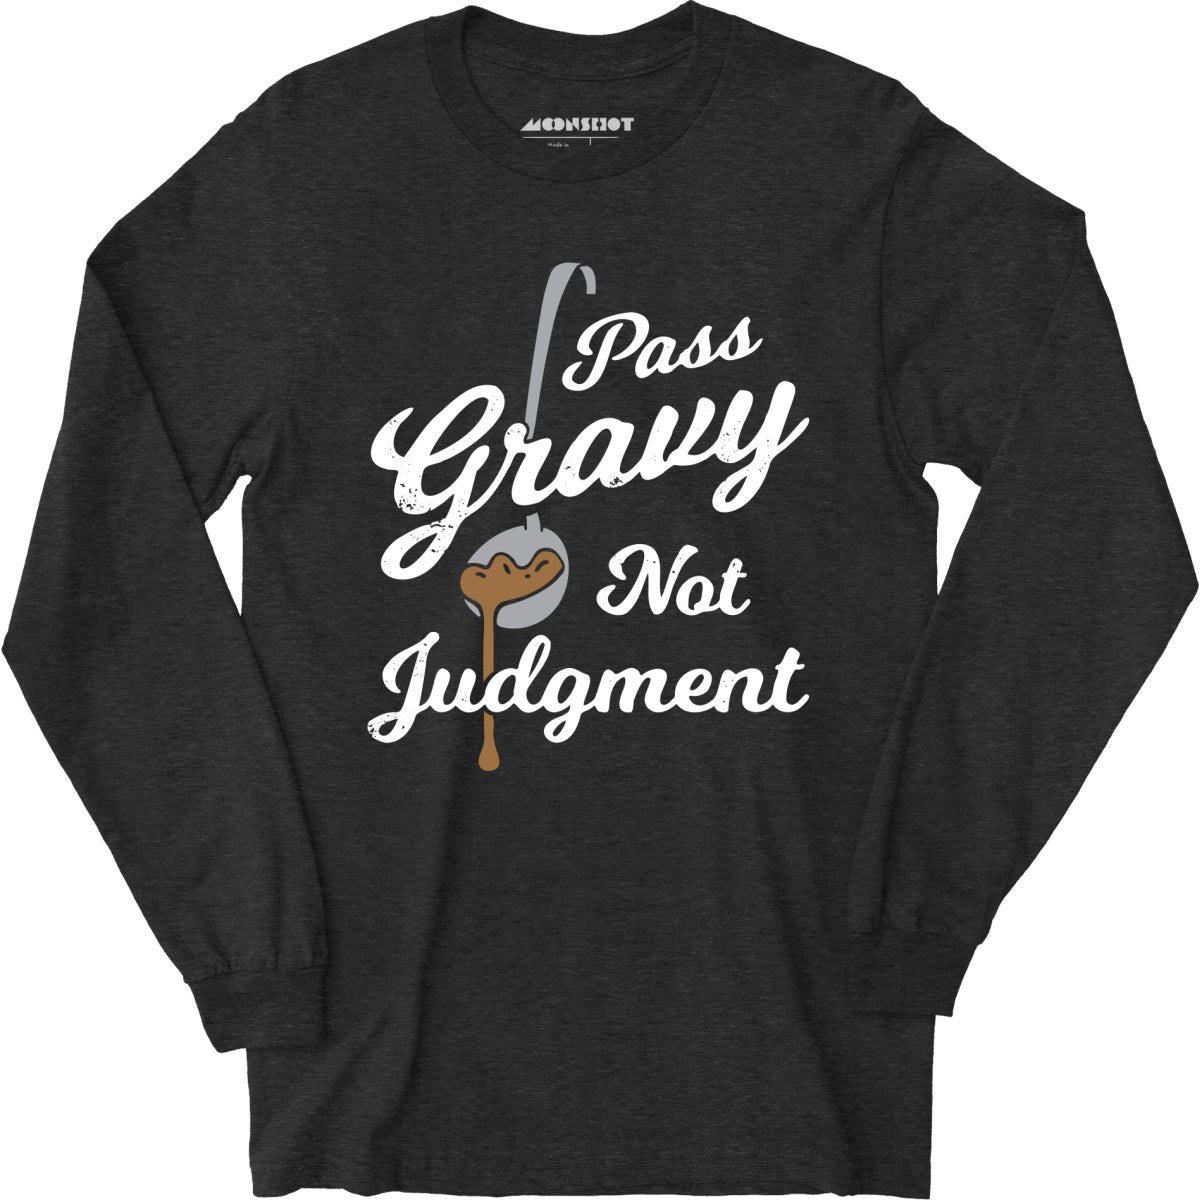 Pass Gravy Not Judgment - Long Sleeve T-Shirt